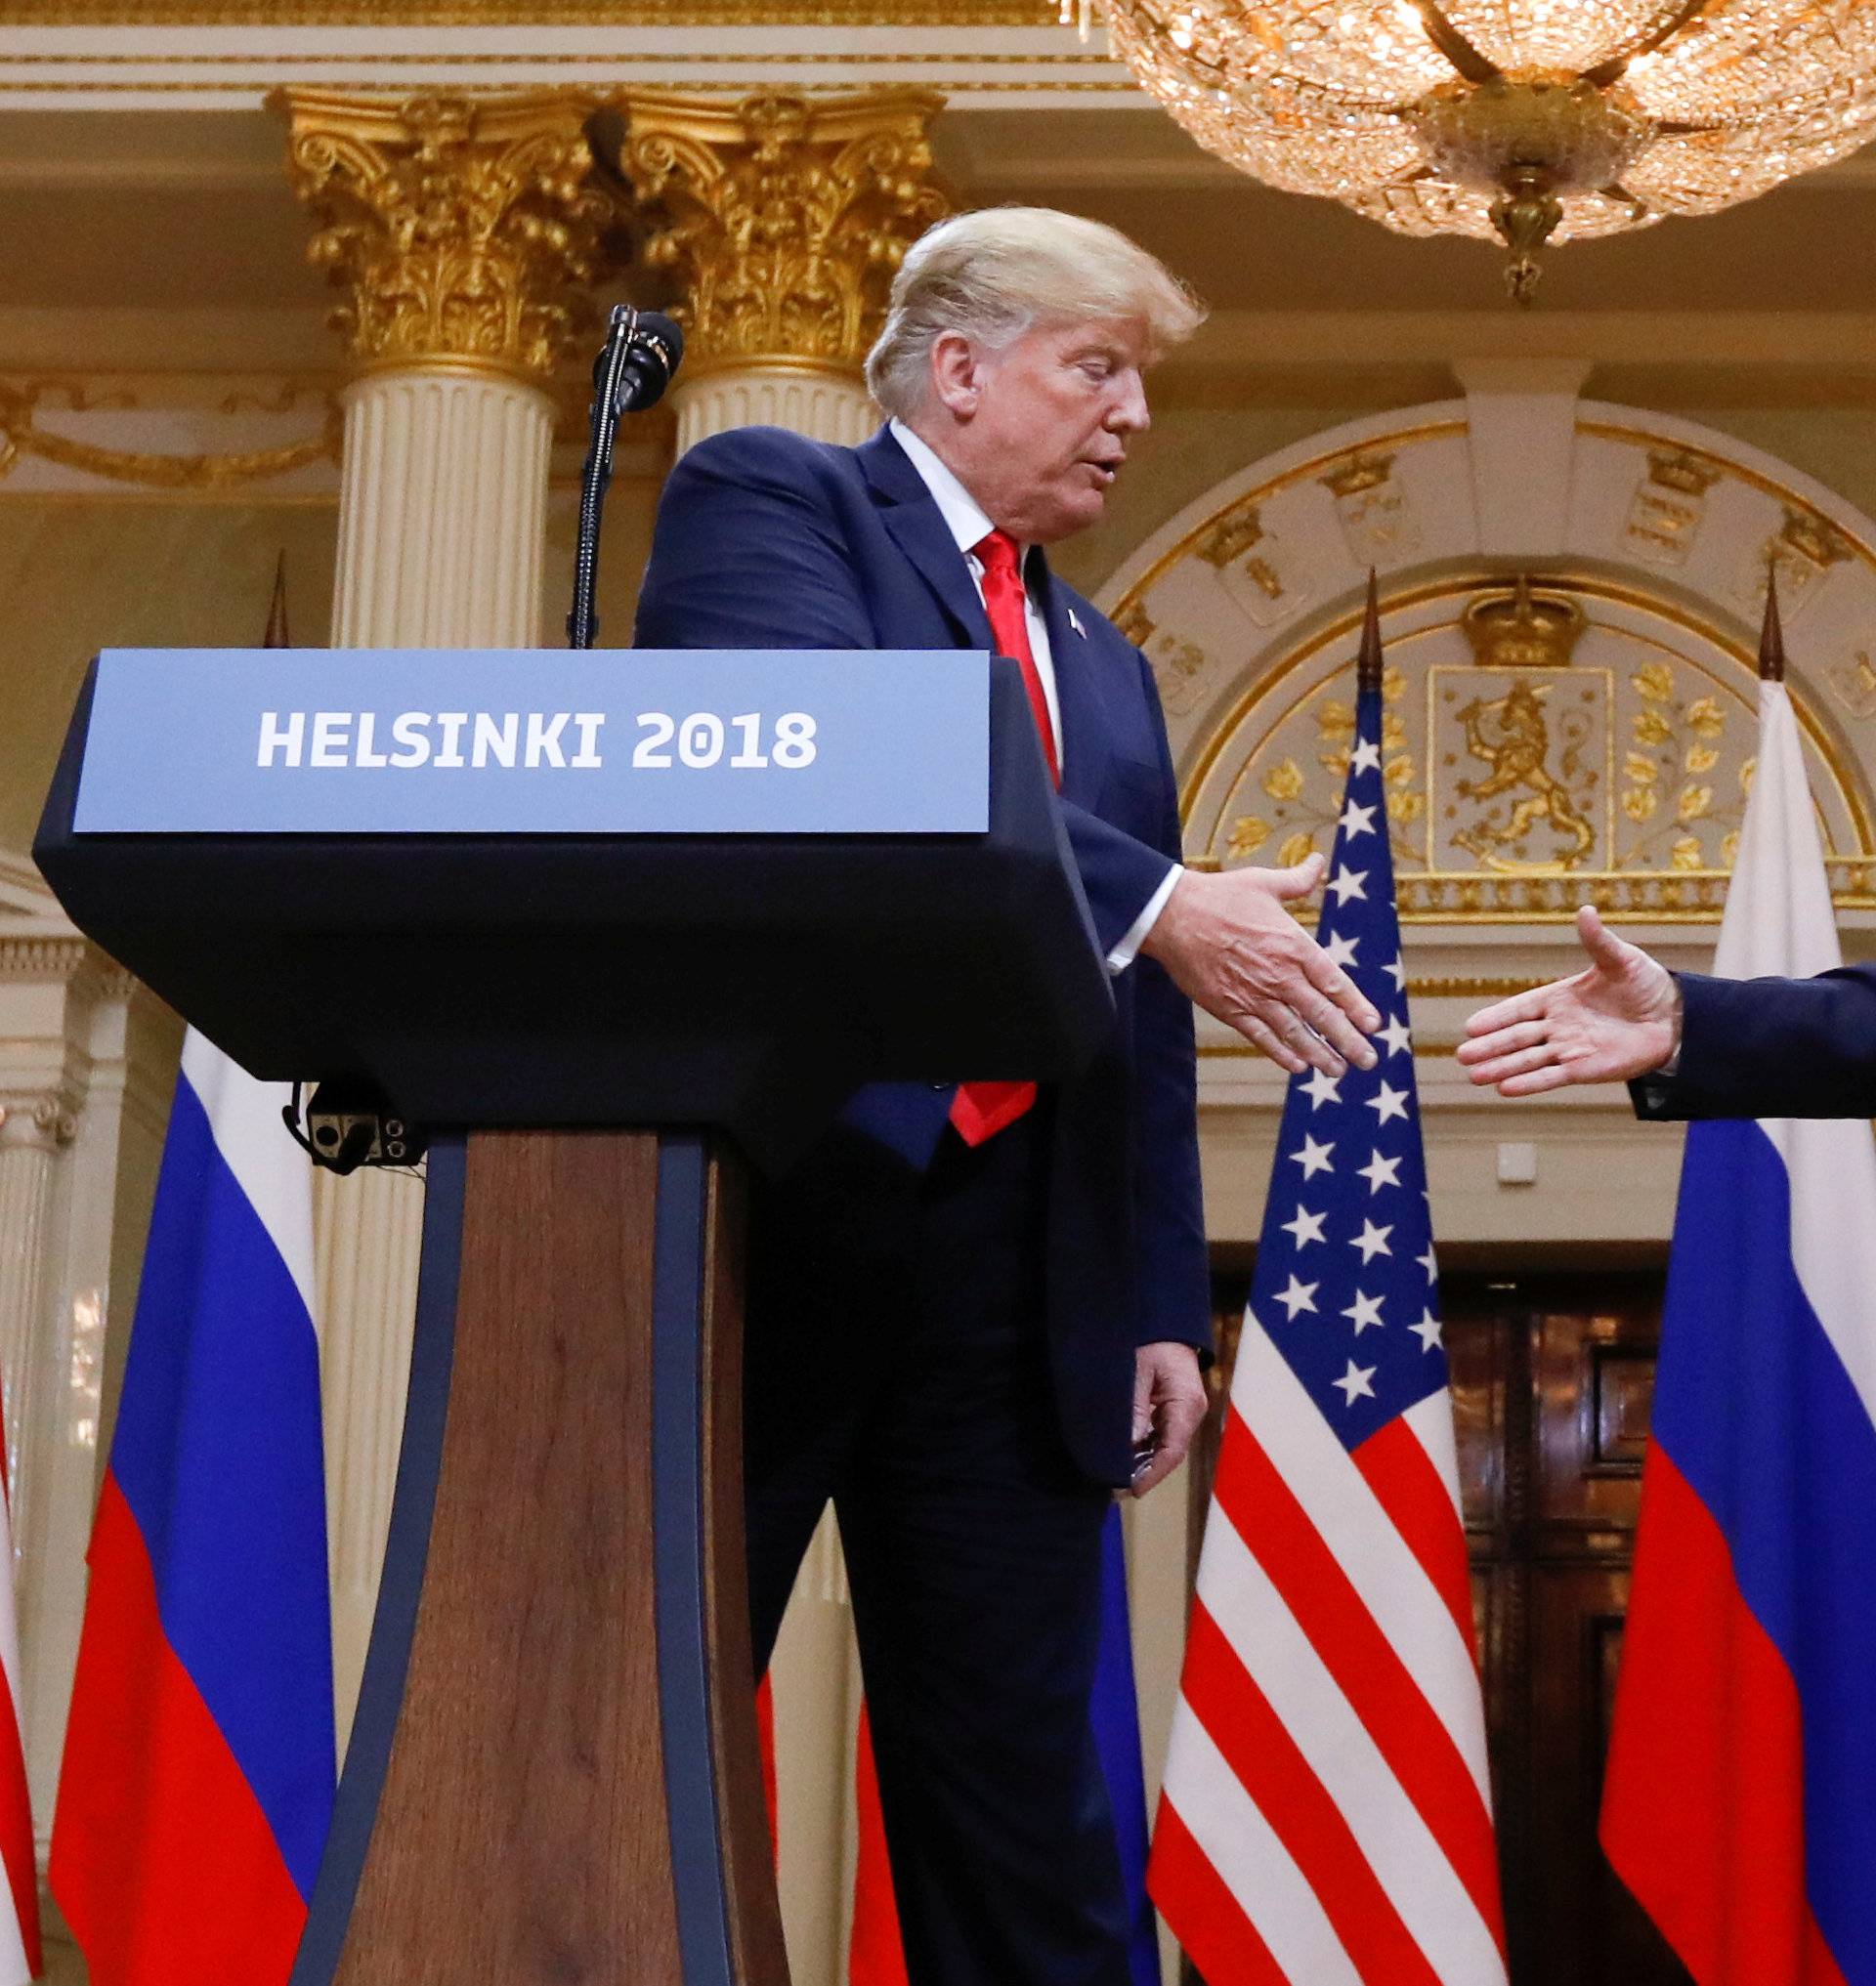 Trump-Putin summit in Helsinki